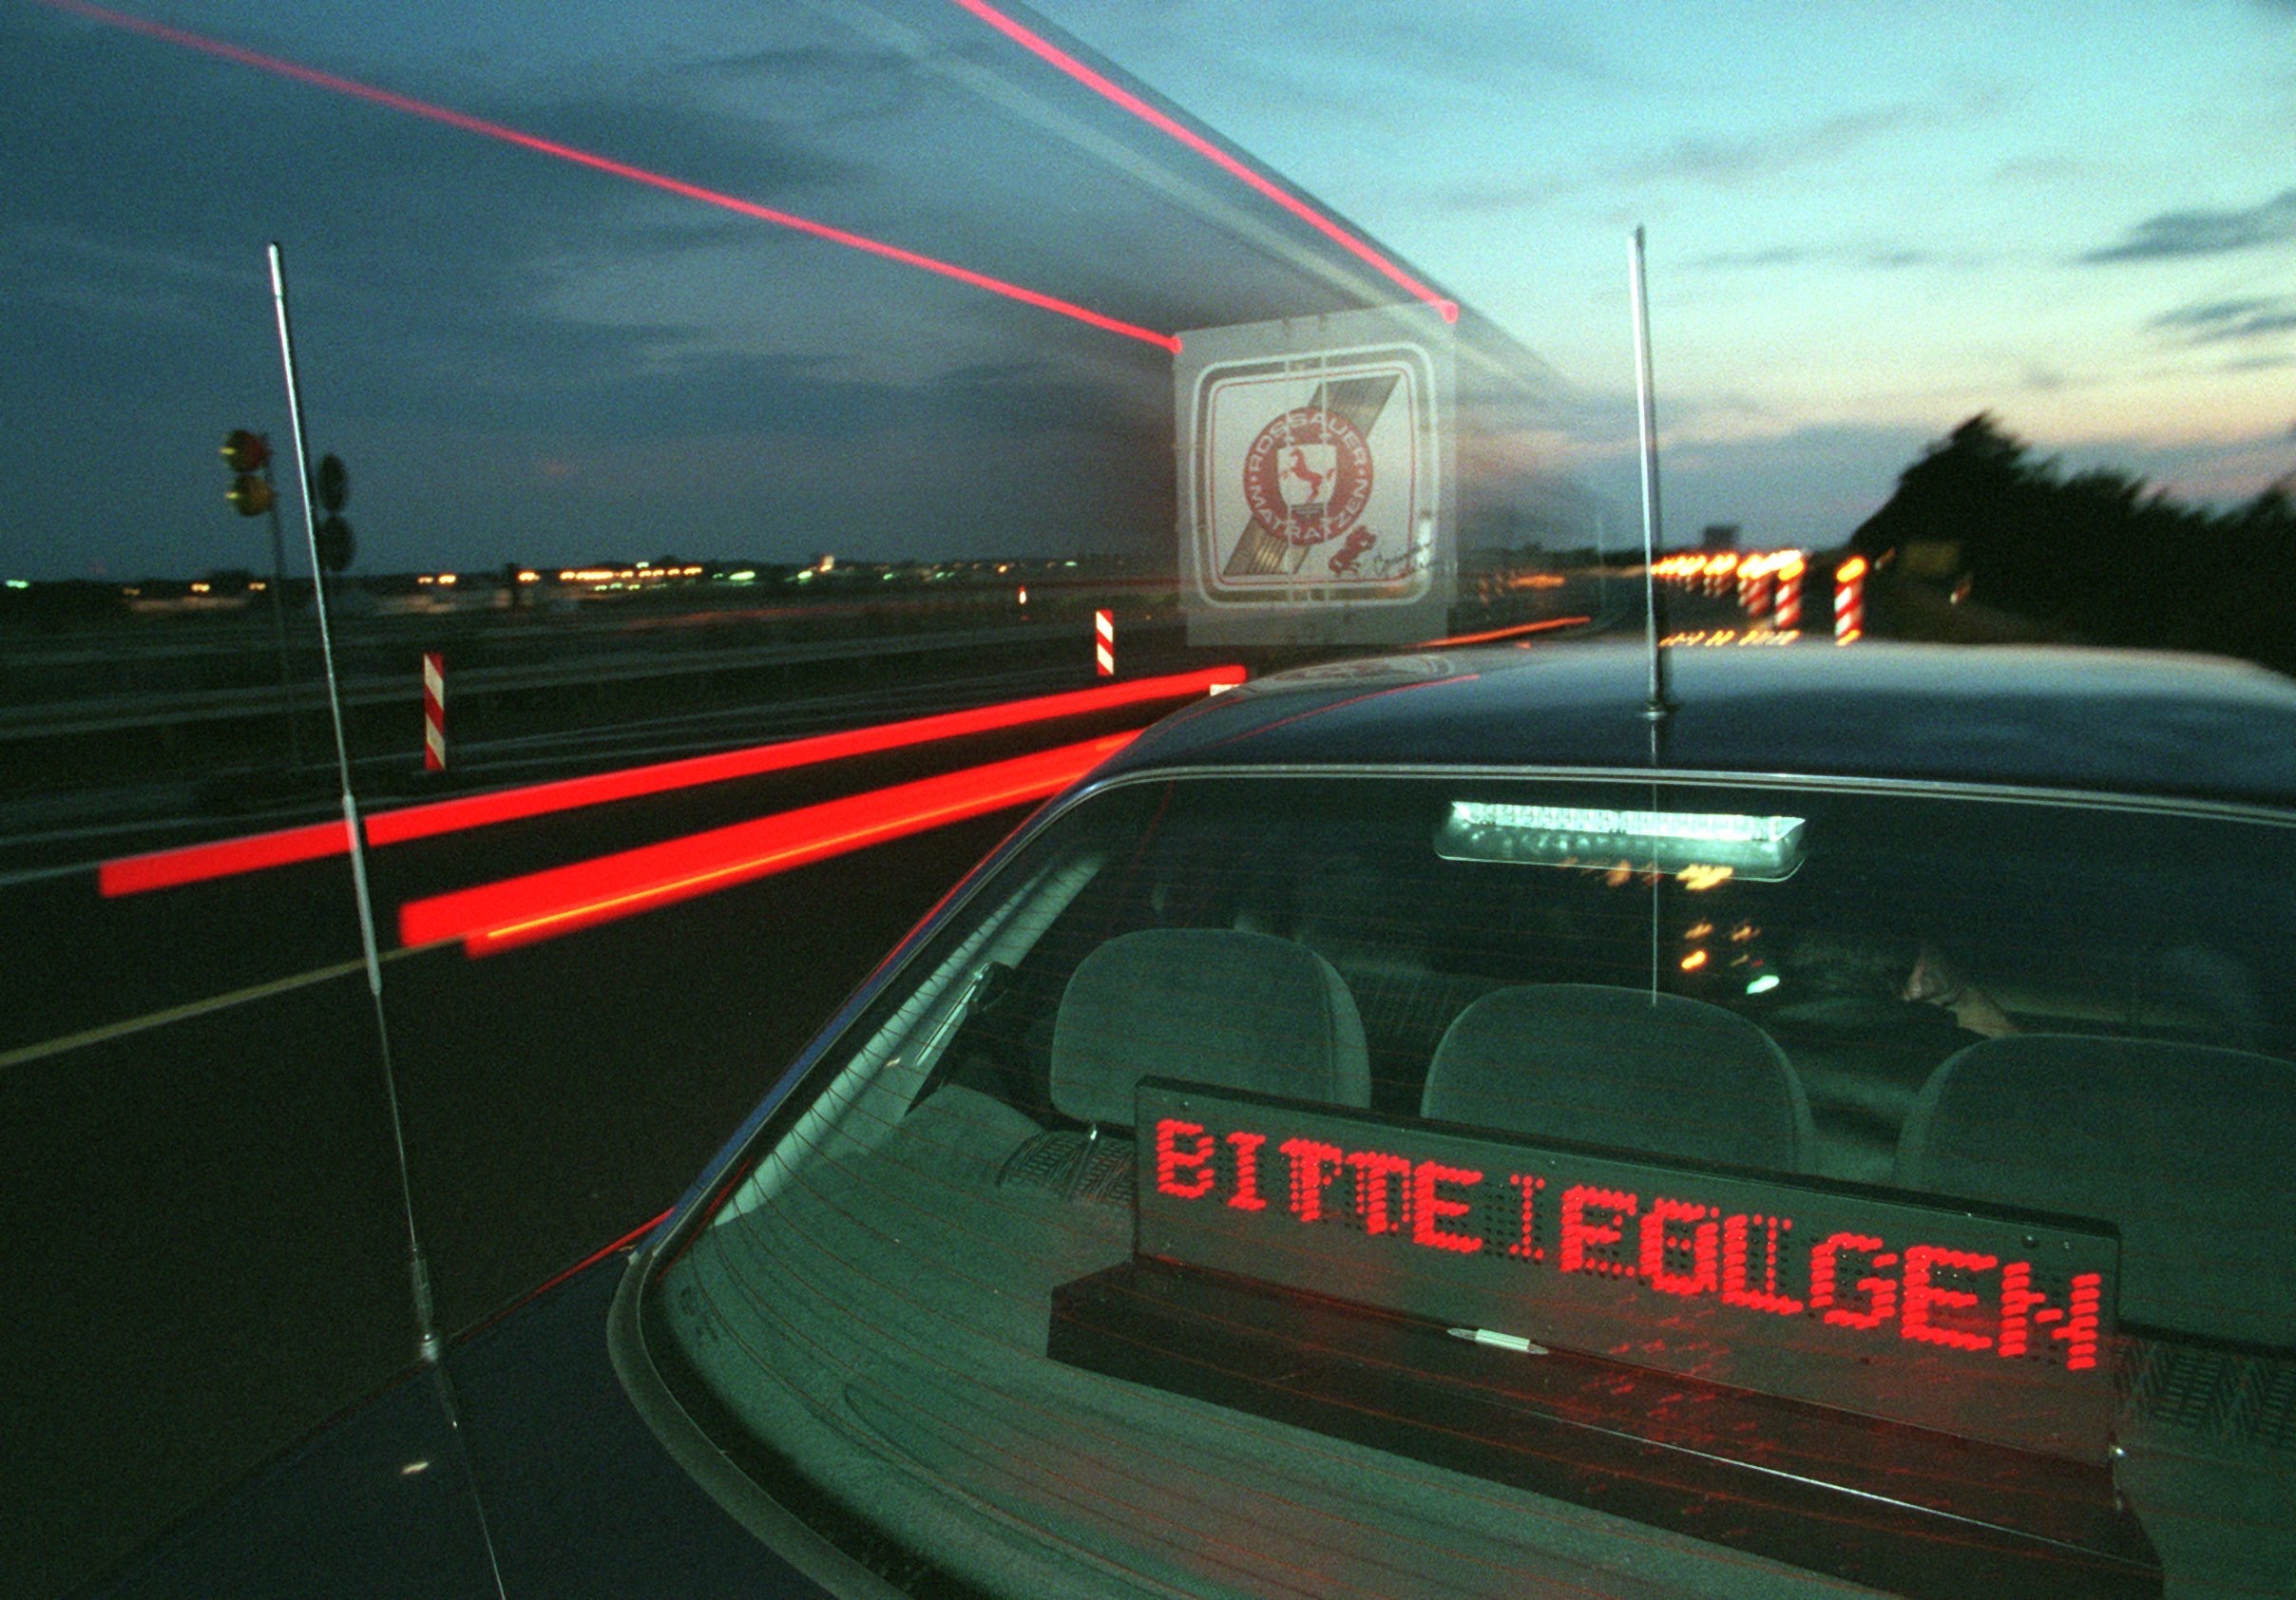 Ein Polizeiwagen, an der Heckscheibe leuchtet der Schriftzug "Bitte folgen" auf